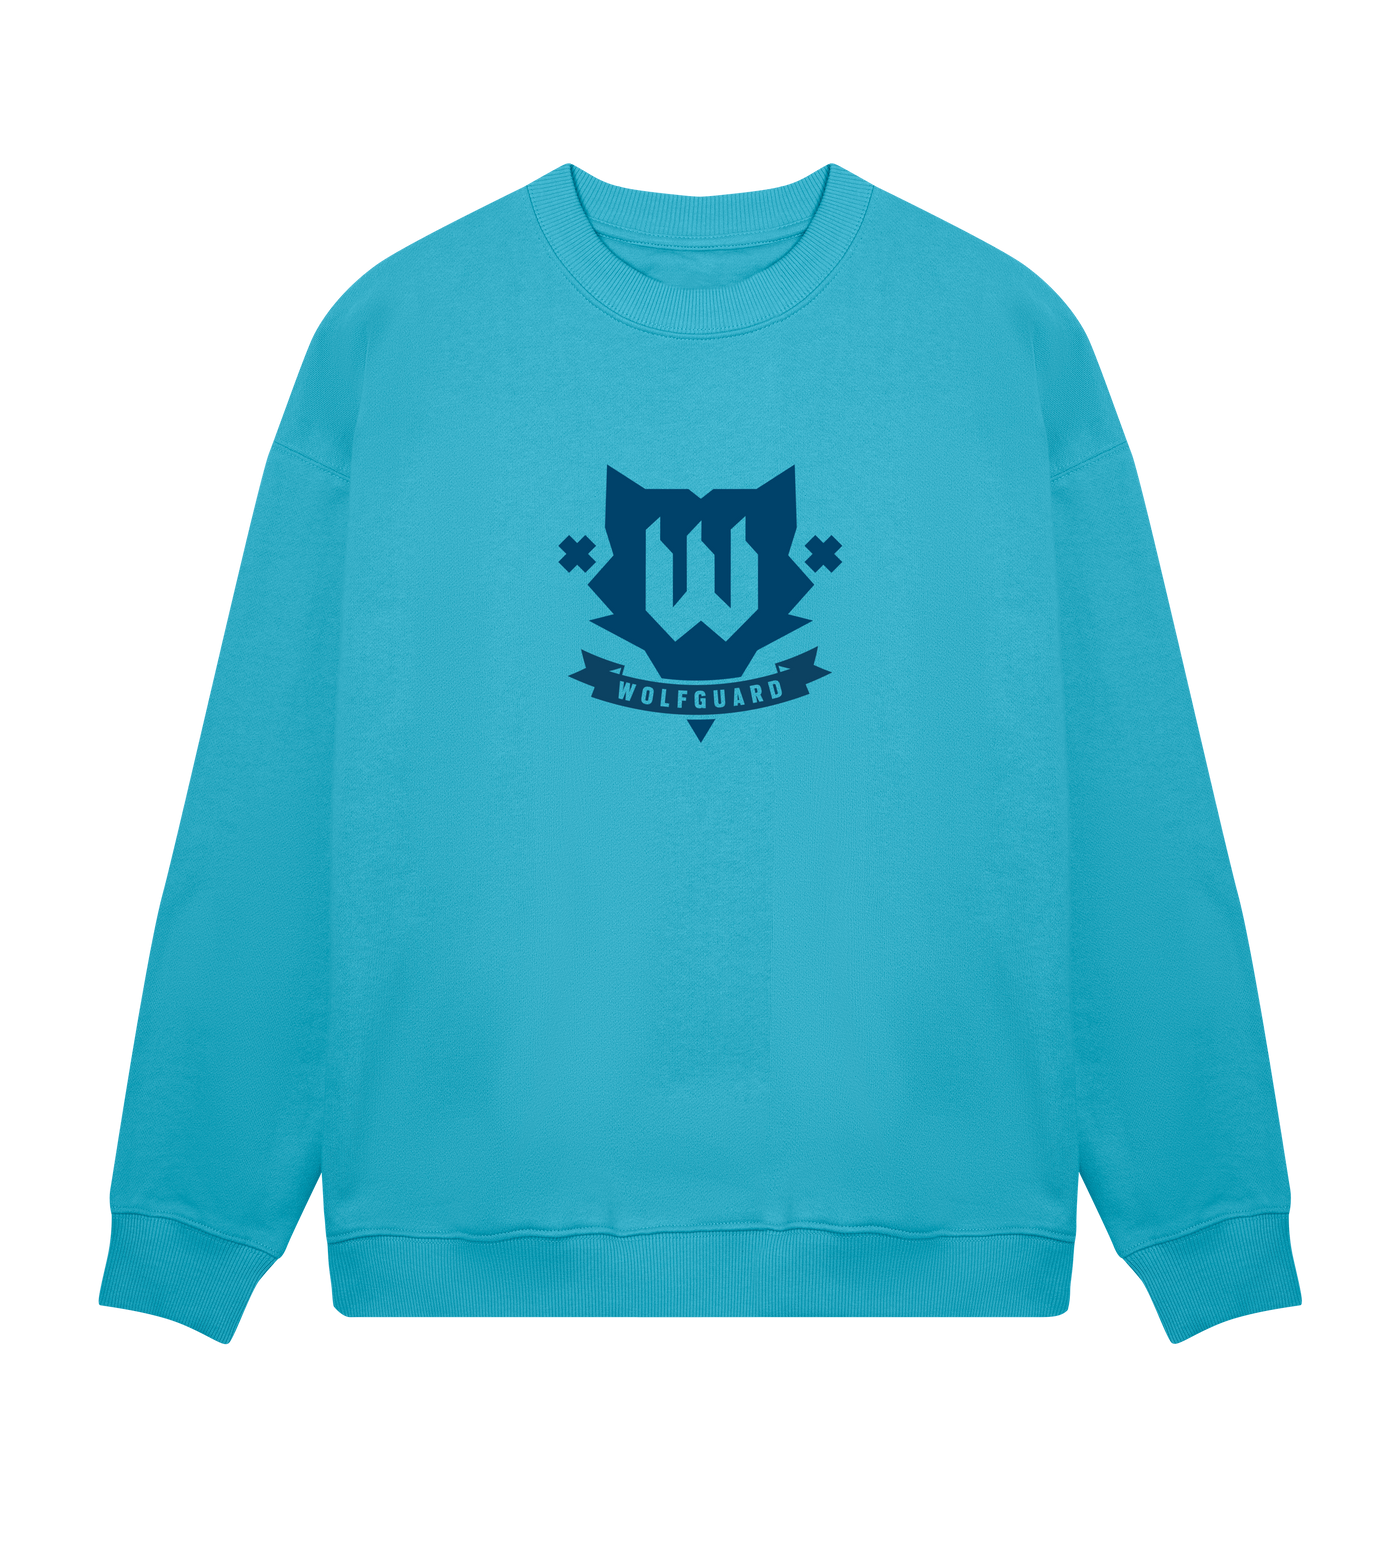 6 SIEGE – Wolfguard Sweatshirt – Limitierte Auflage